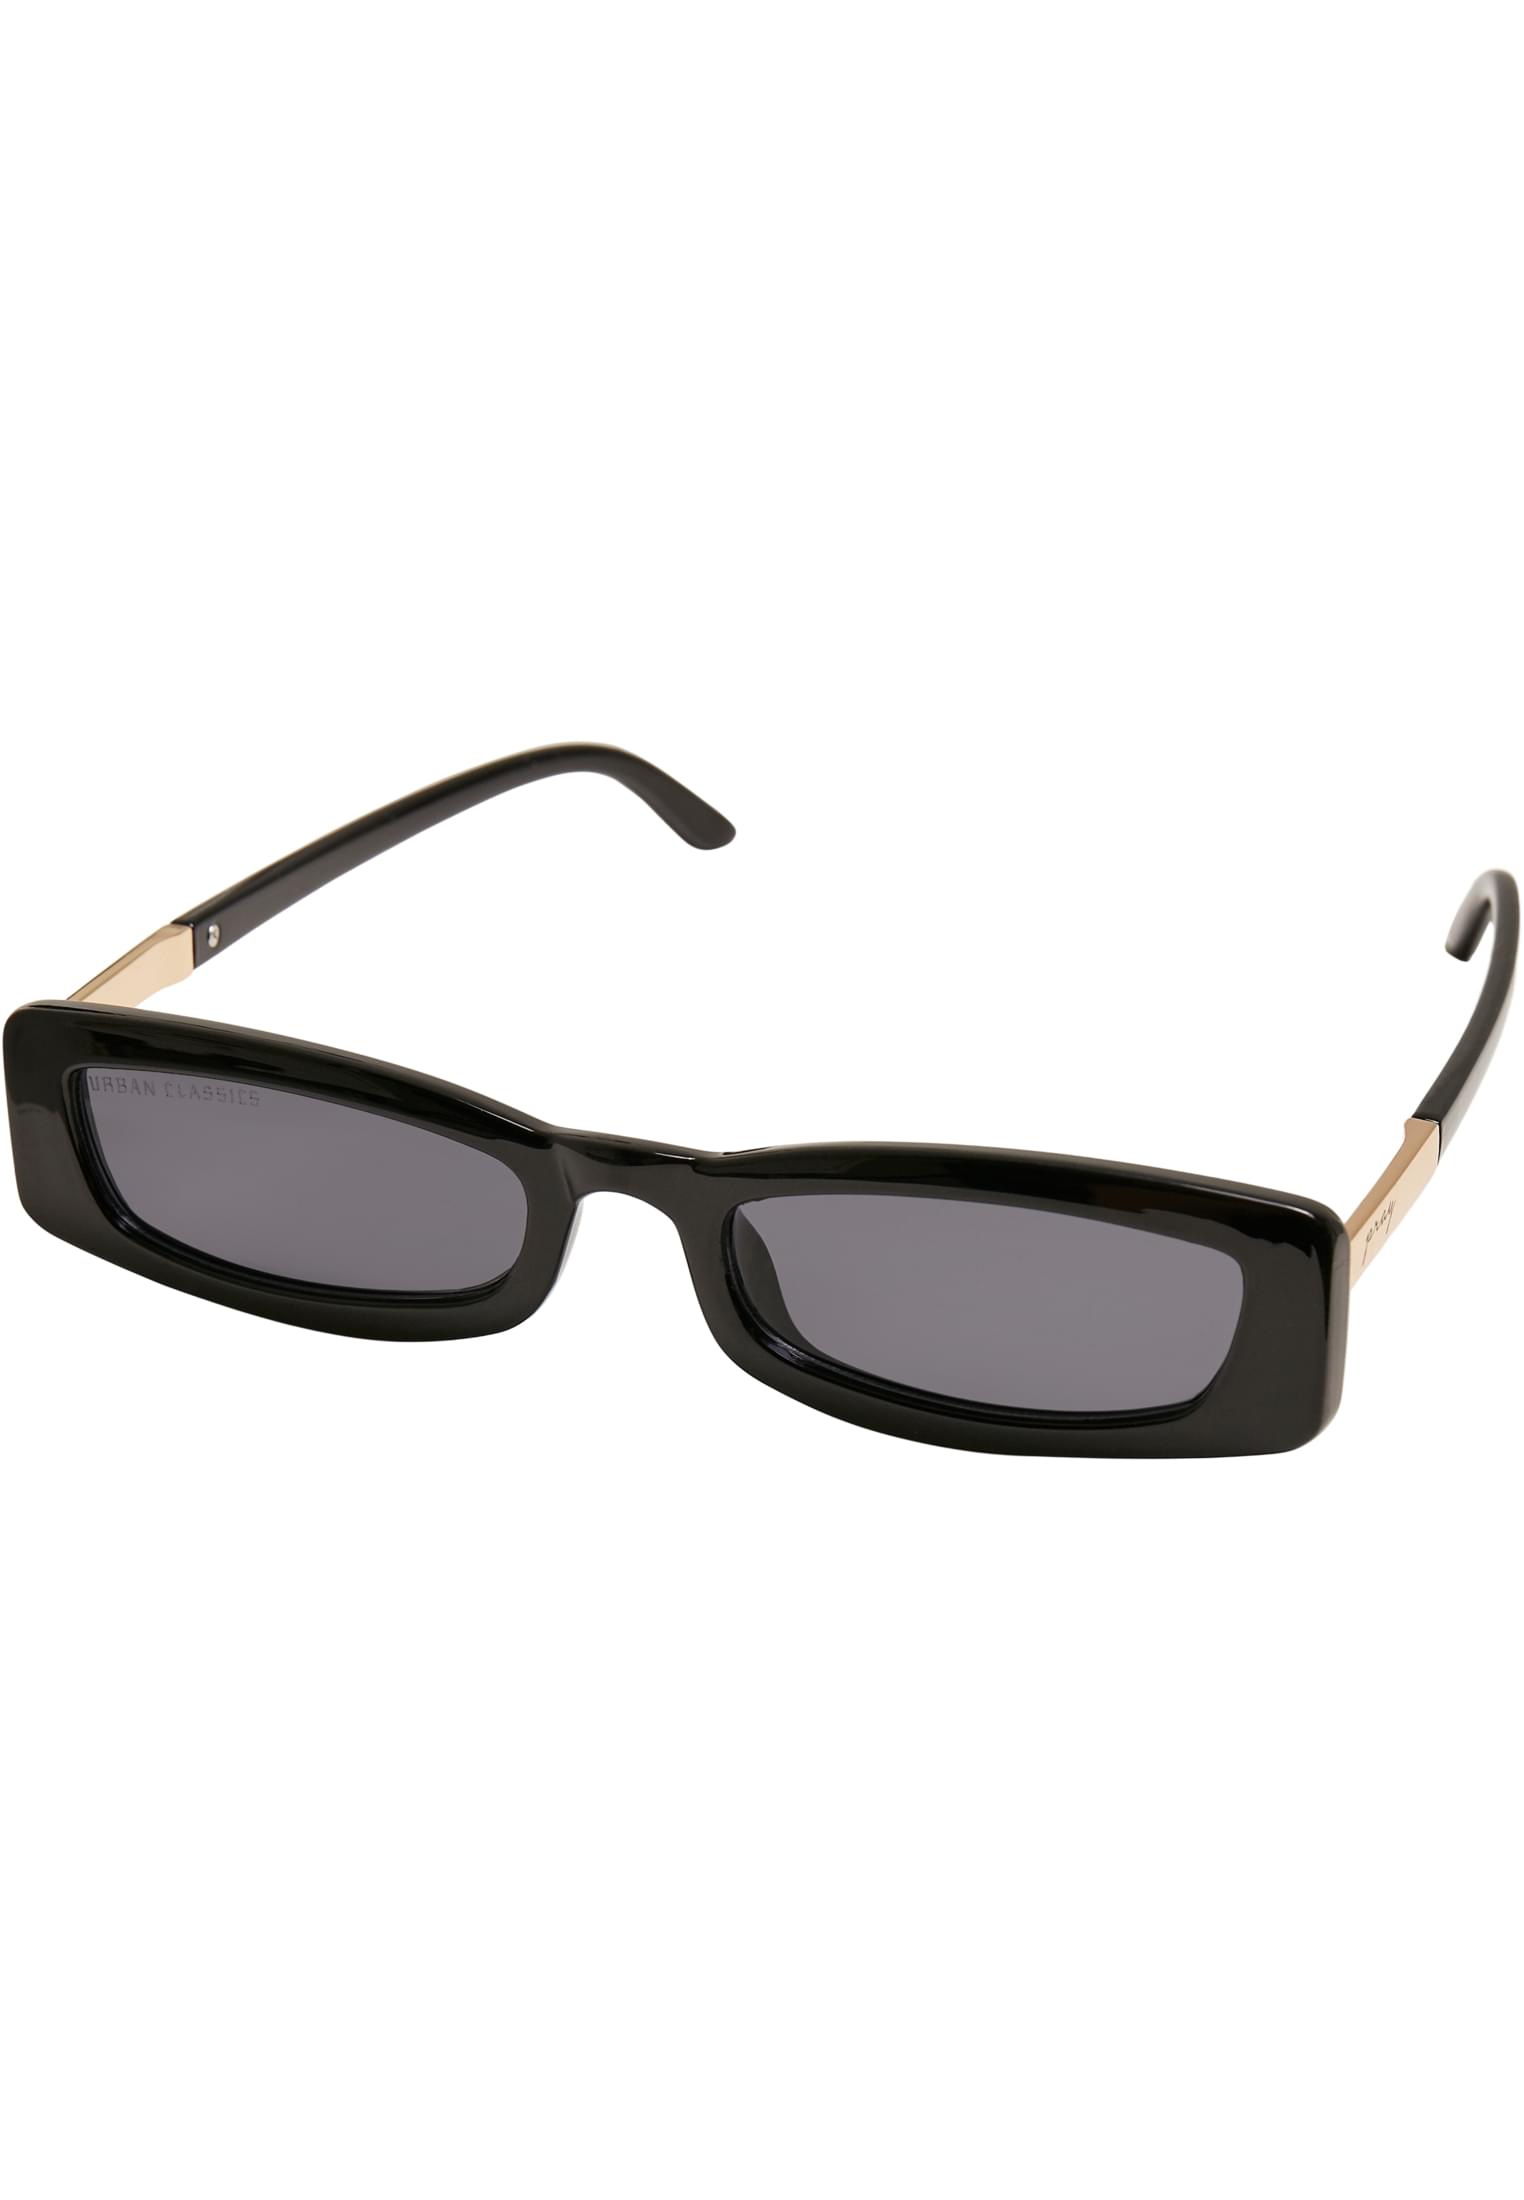 Sonnenbrillen Sunglasses Minicoy in Farbe black